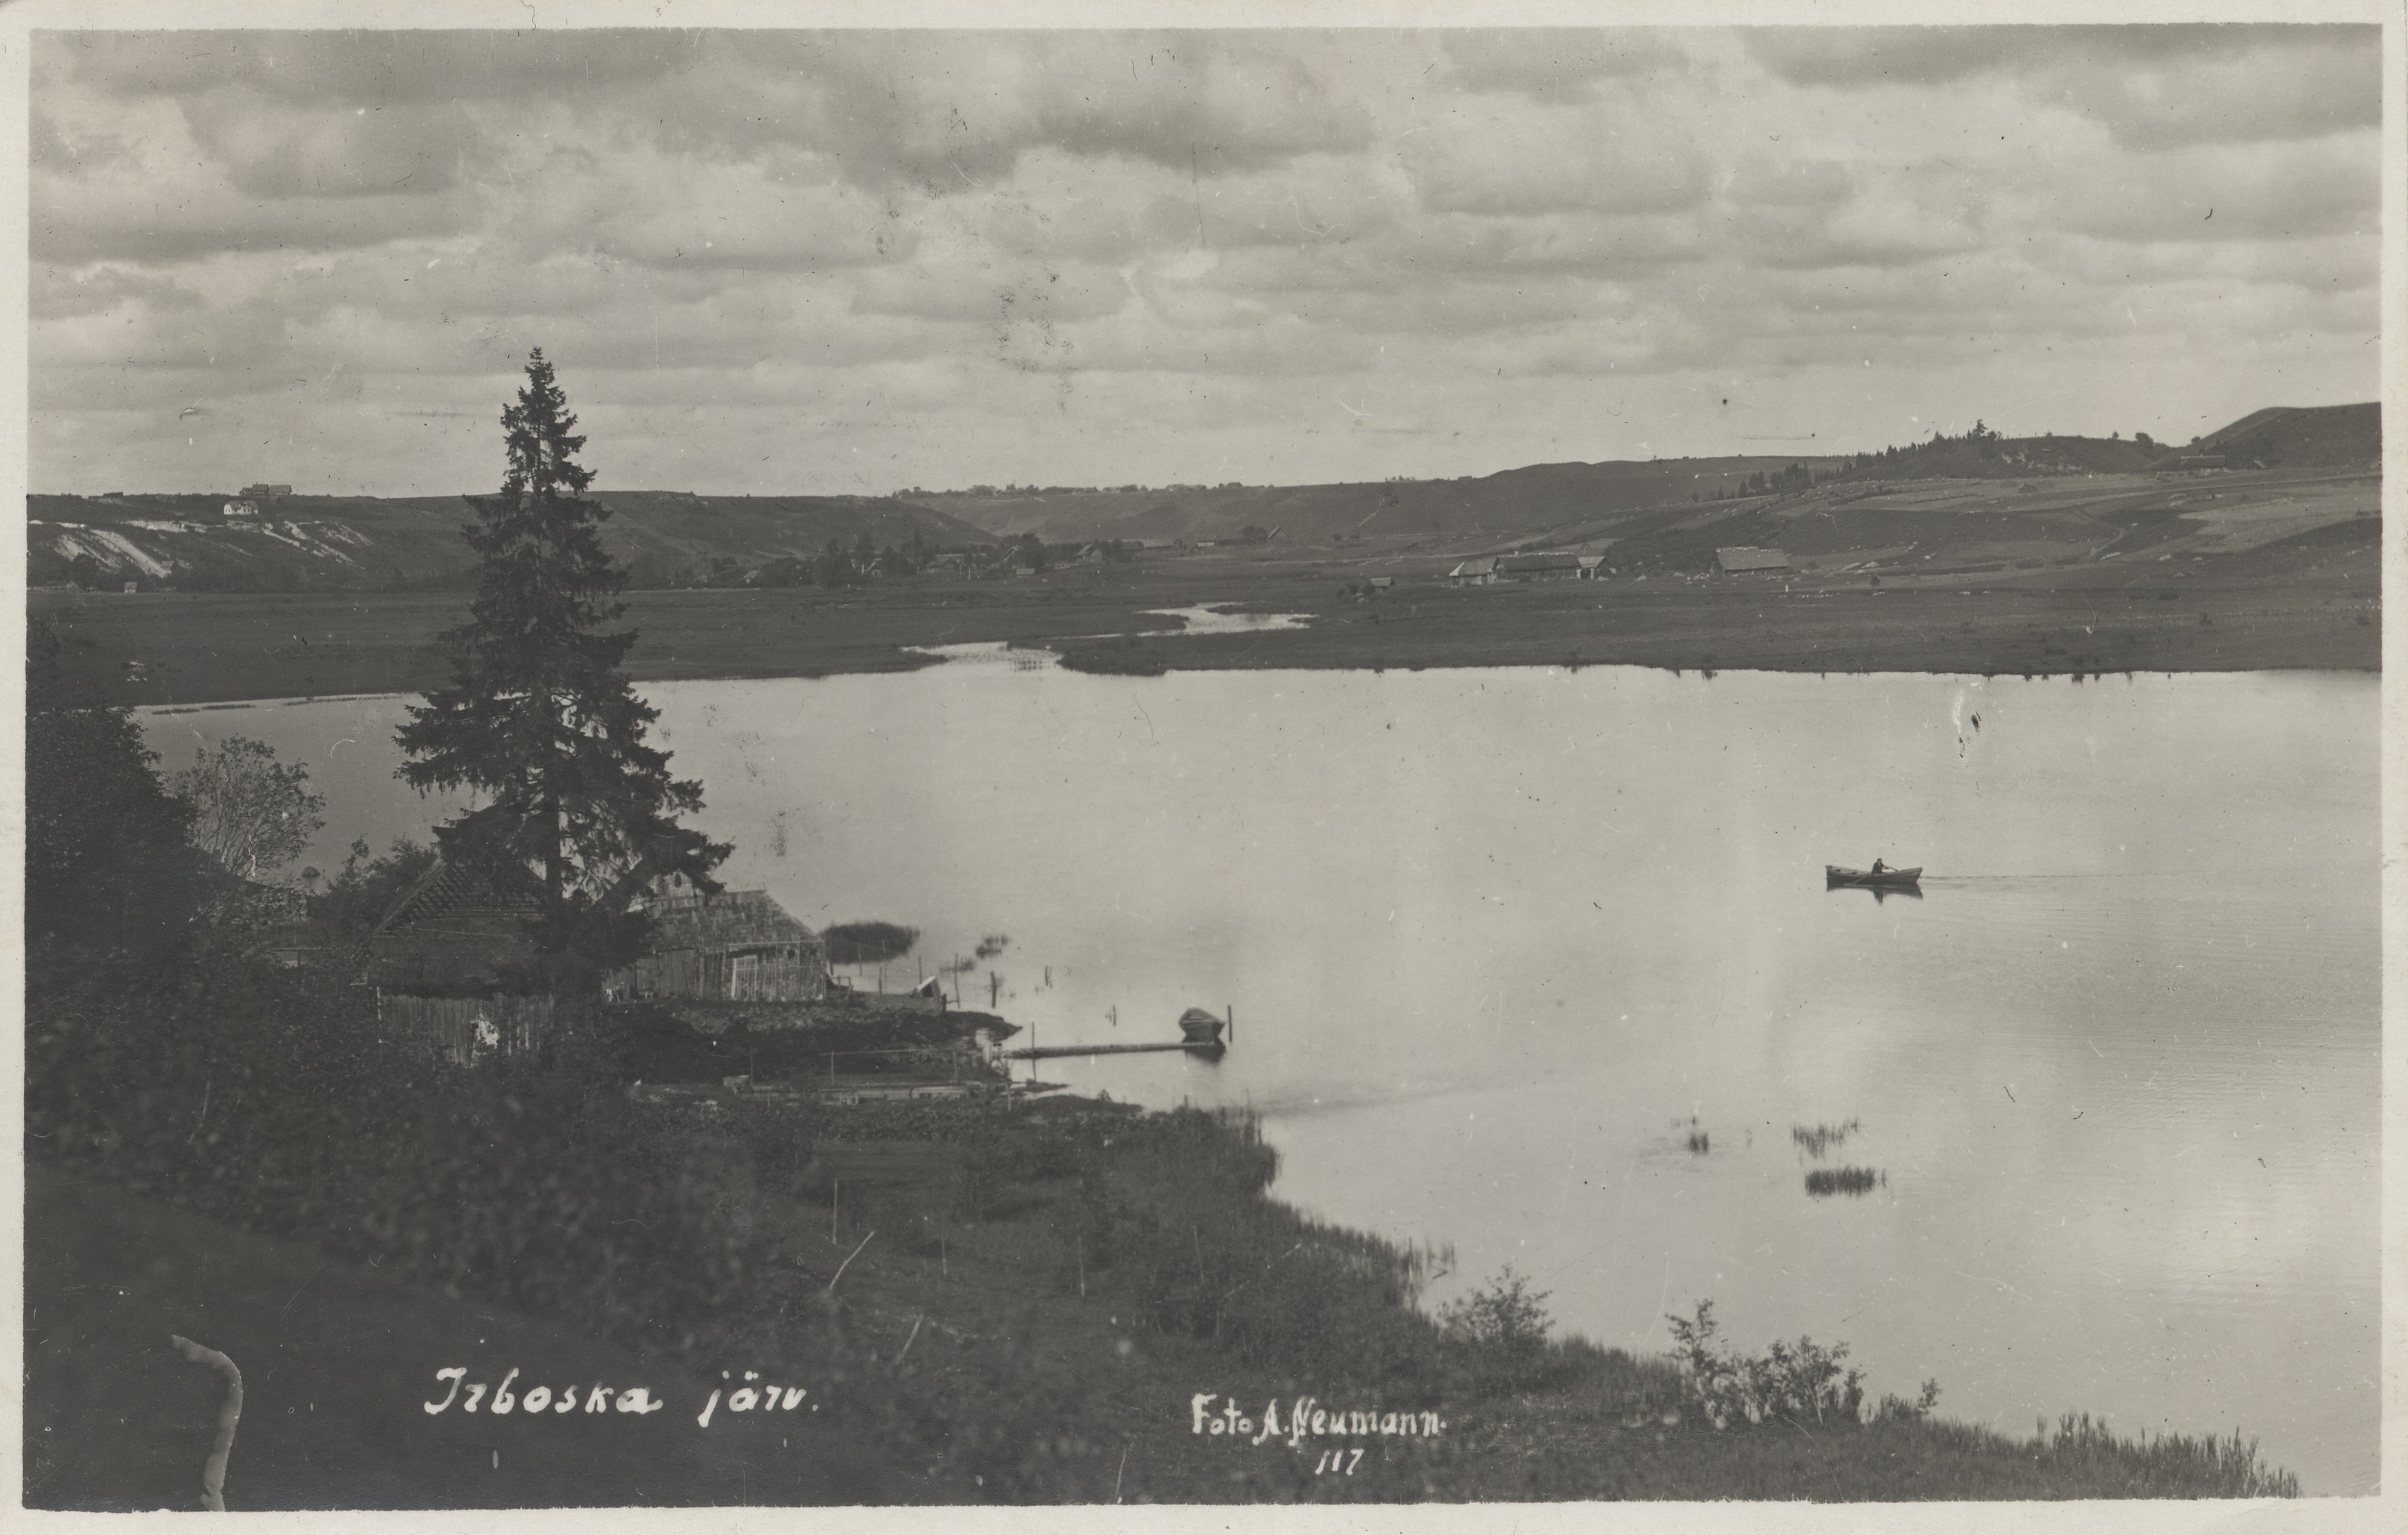 Irboska Lake